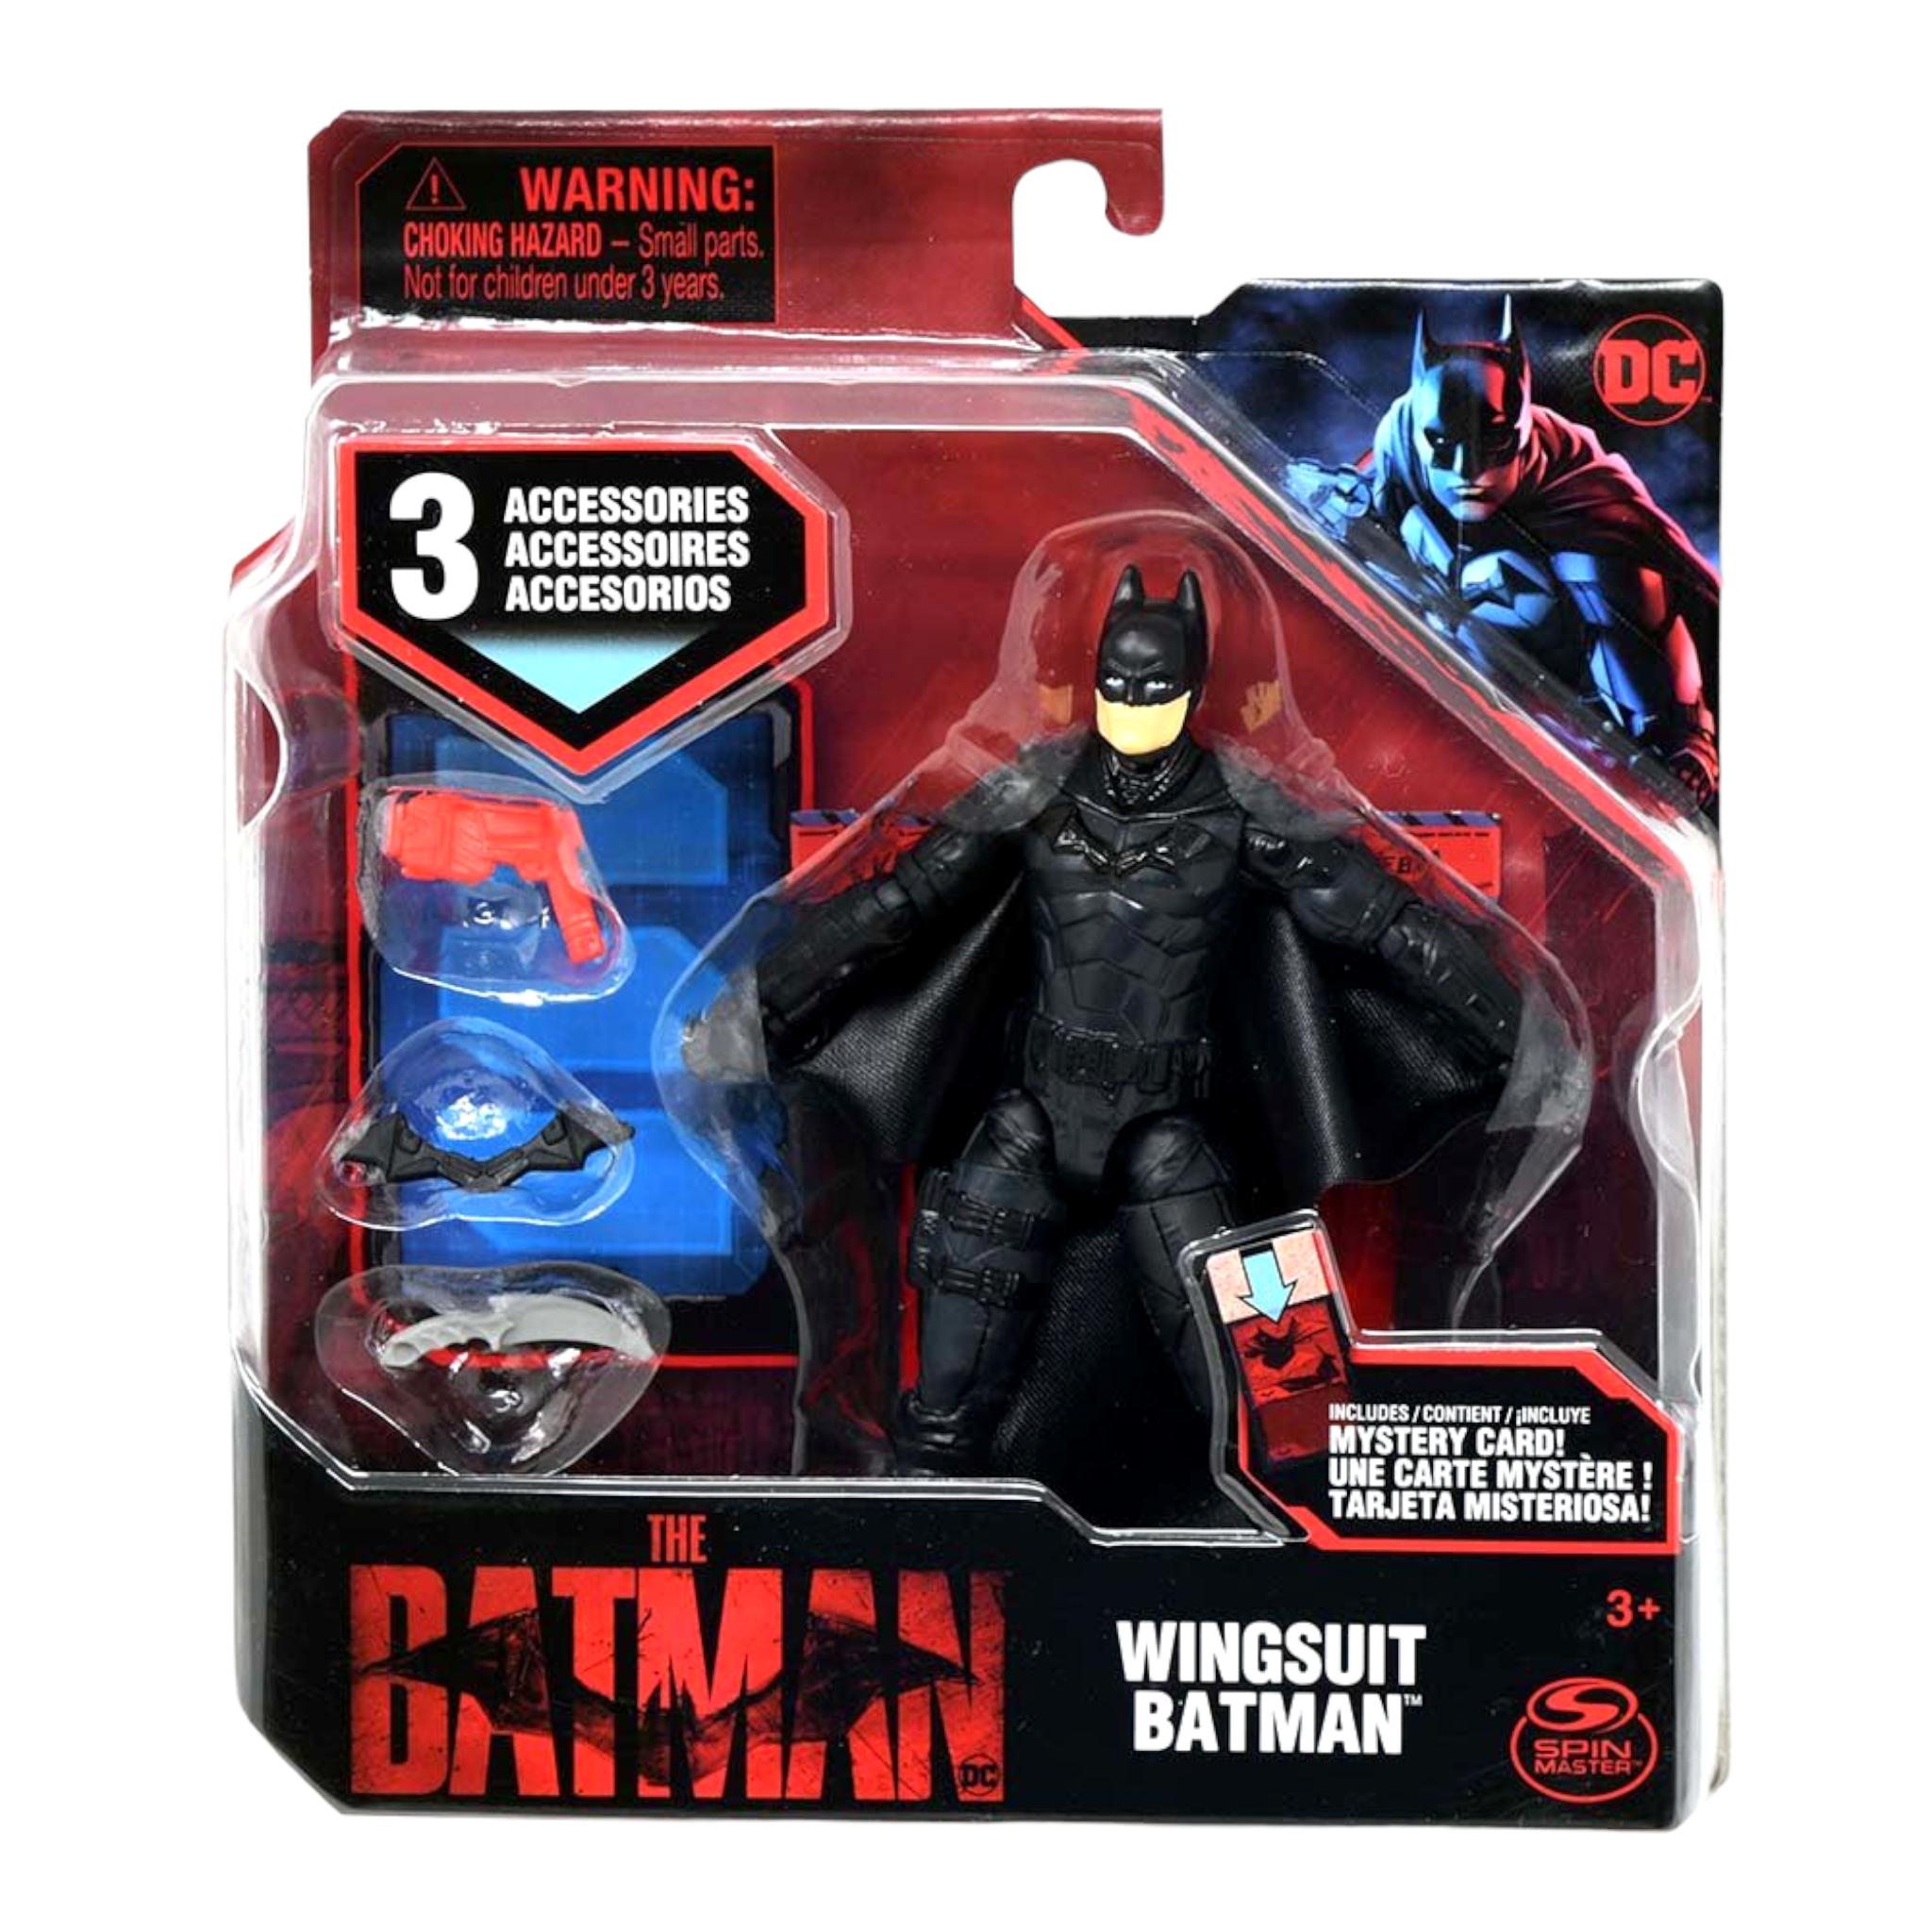 Dc Action Figures Justice League Batman